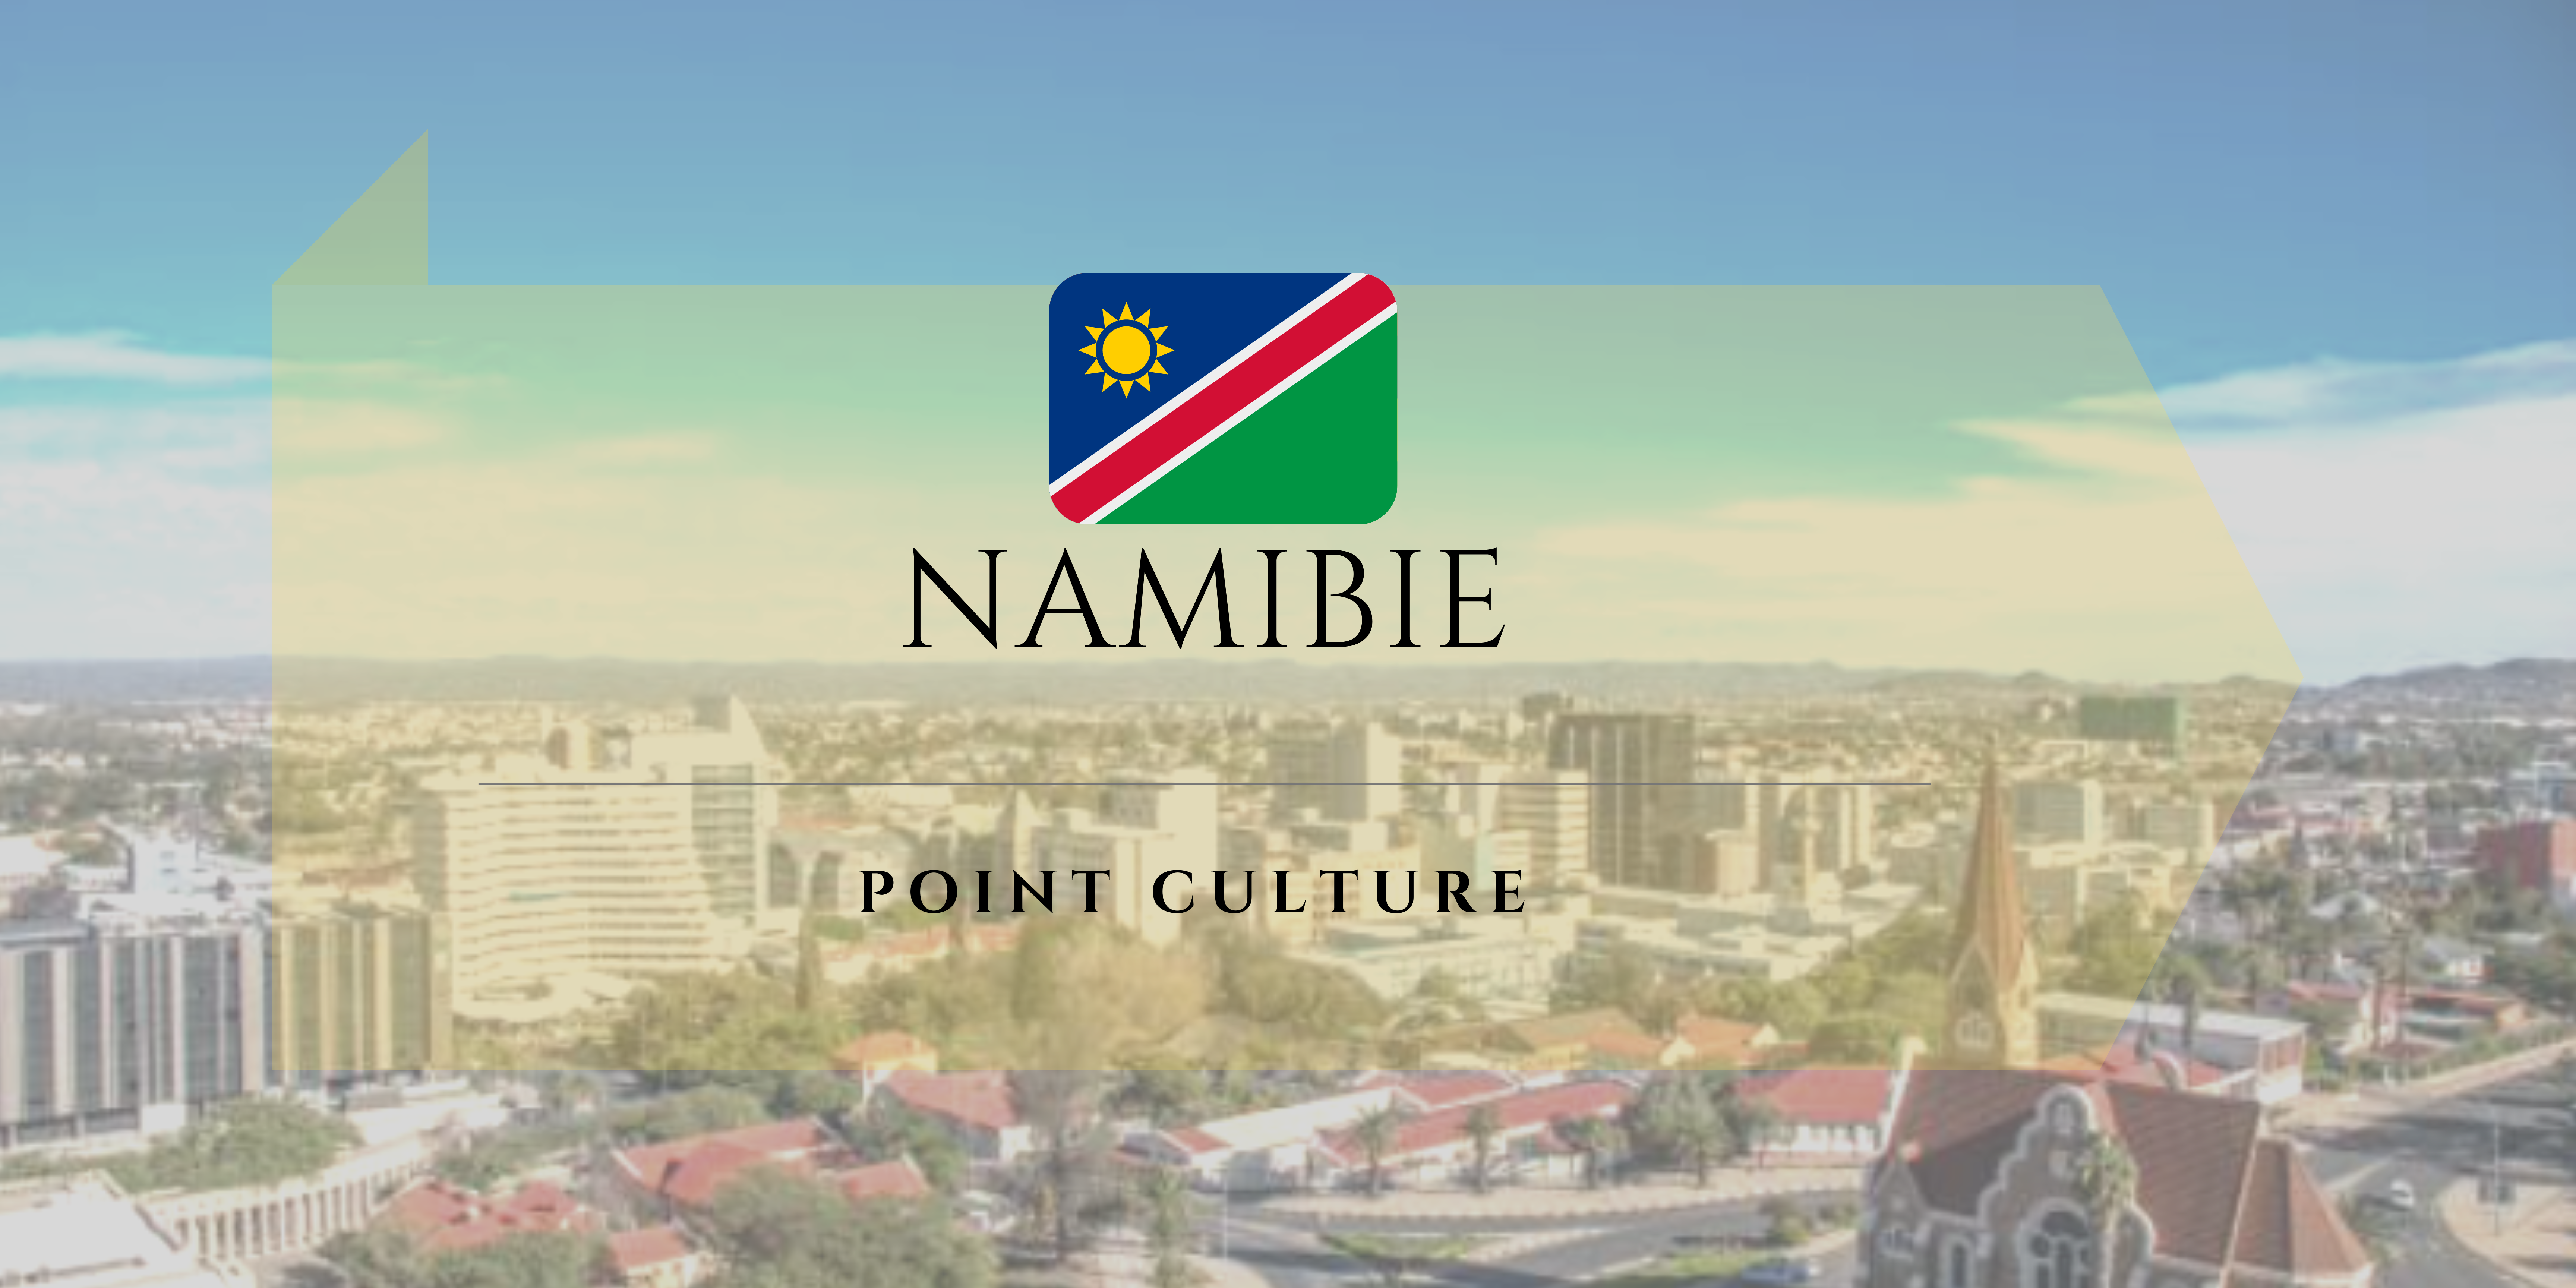 Point culture : La Namibie